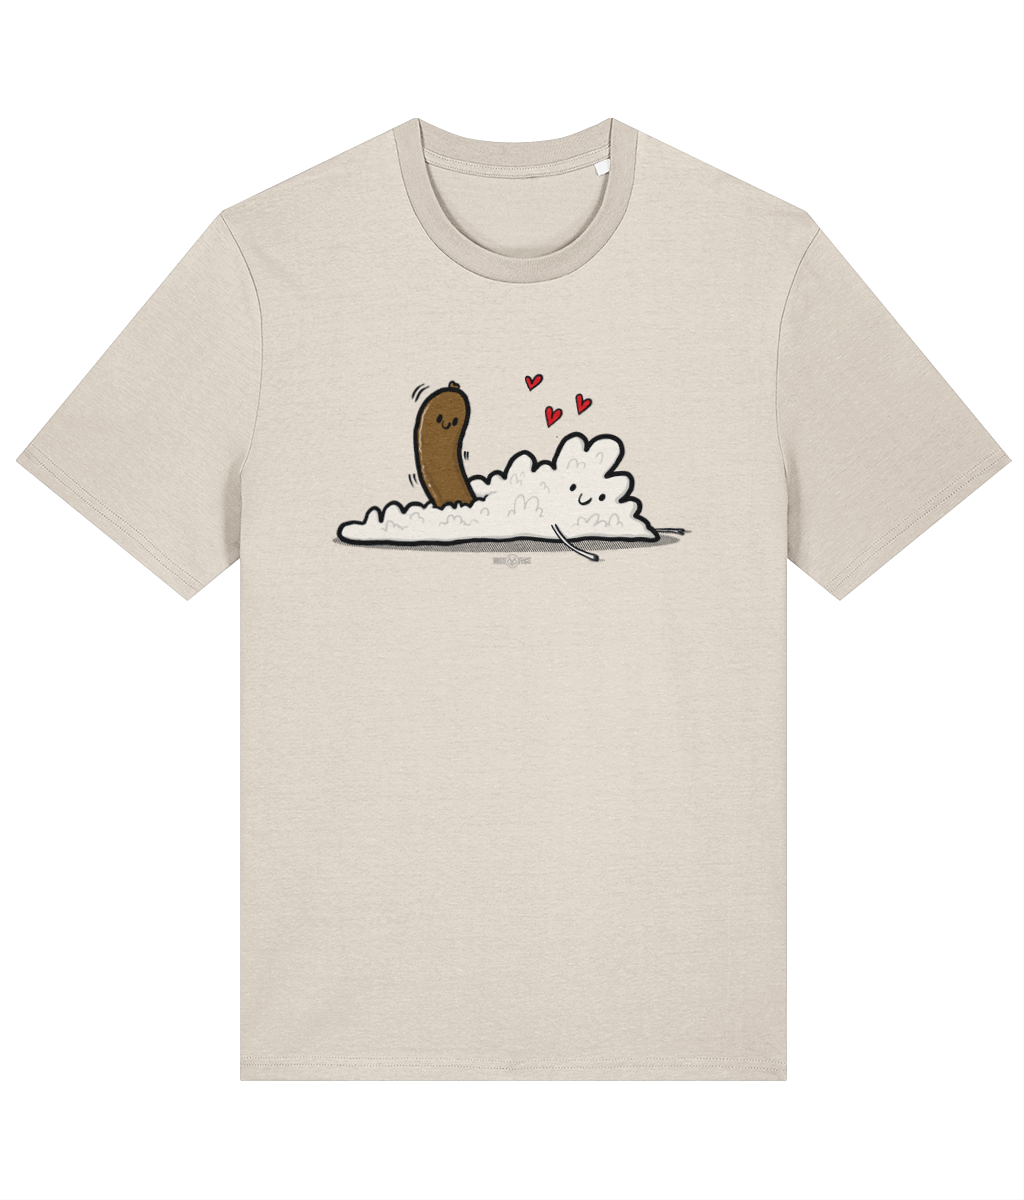 Sausage Loves Mash - Tussface T-shirt